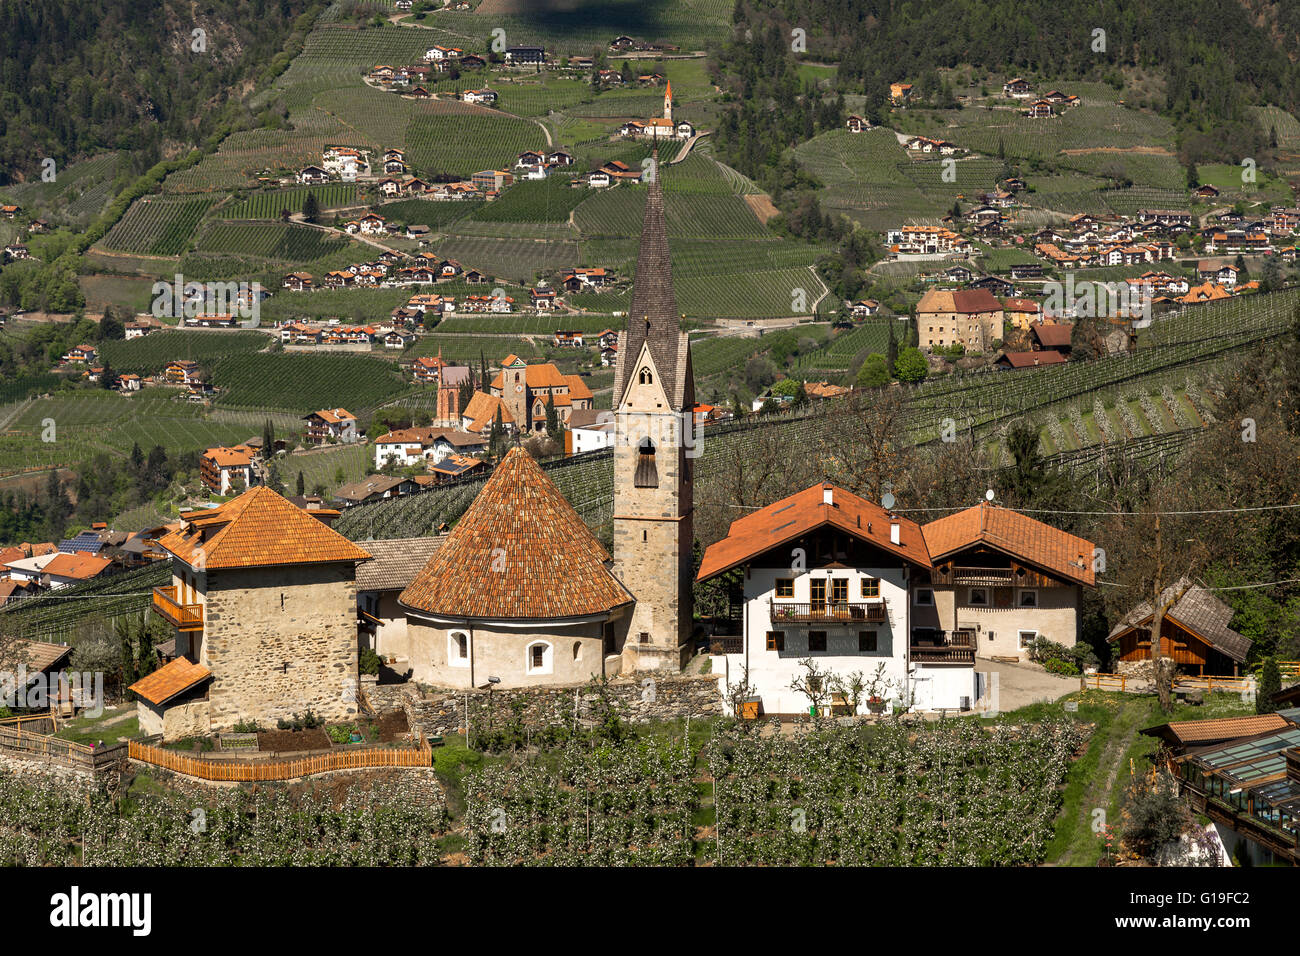 St. Georgen near Schenna, Meran, South Tyrol Stock Photo